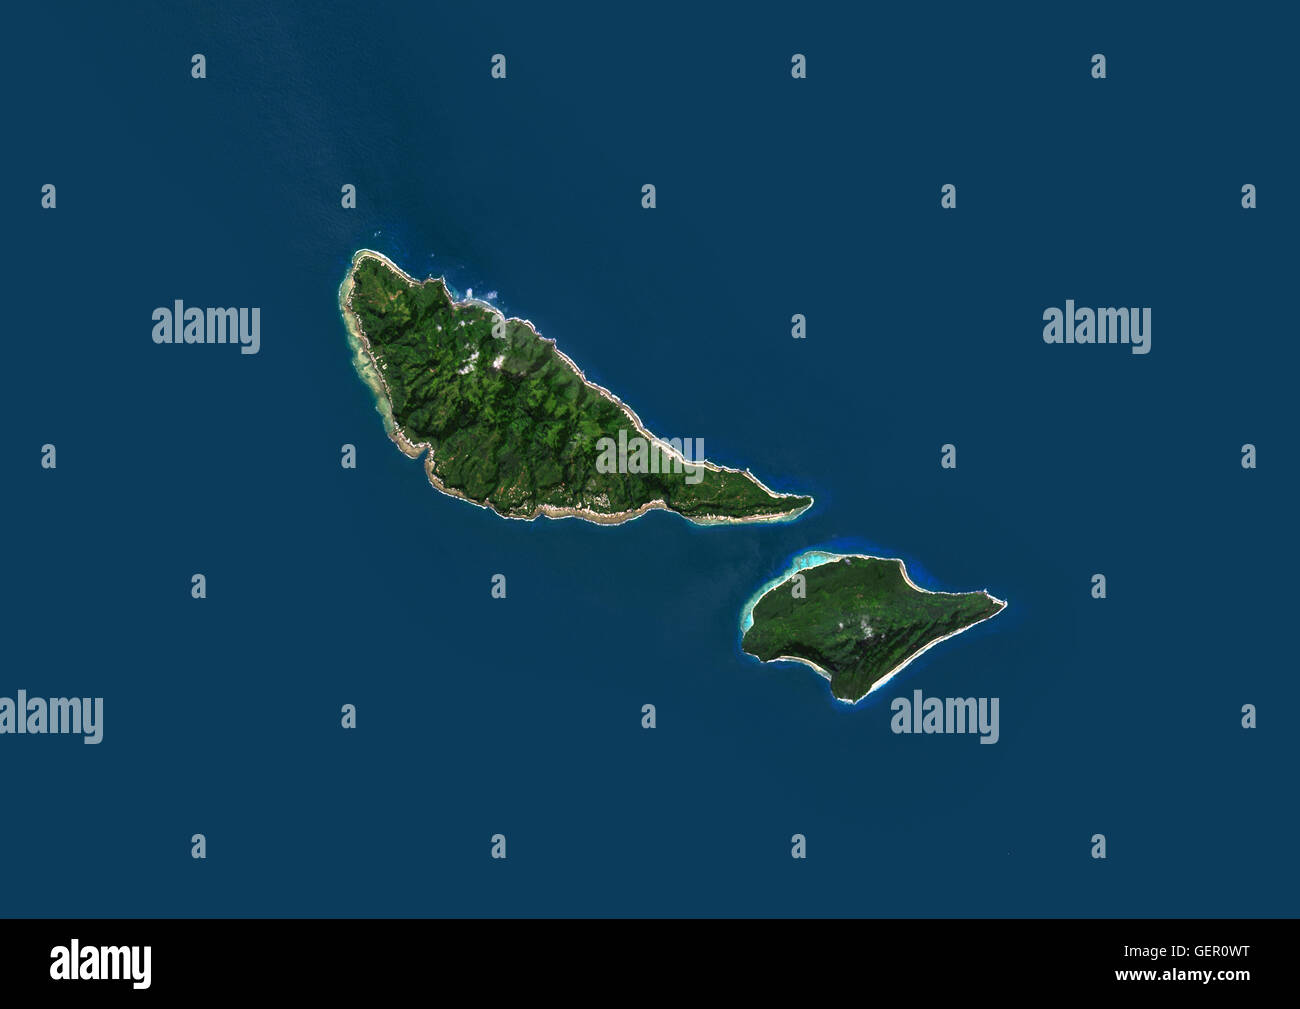 Vista satélite de Futuna y Alofi, parte de las Islas de Wallis y Futuna. Esta imagen fue compilado a partir de los datos obtenidos por el satélite Landsat 8 en 2014. Foto de stock